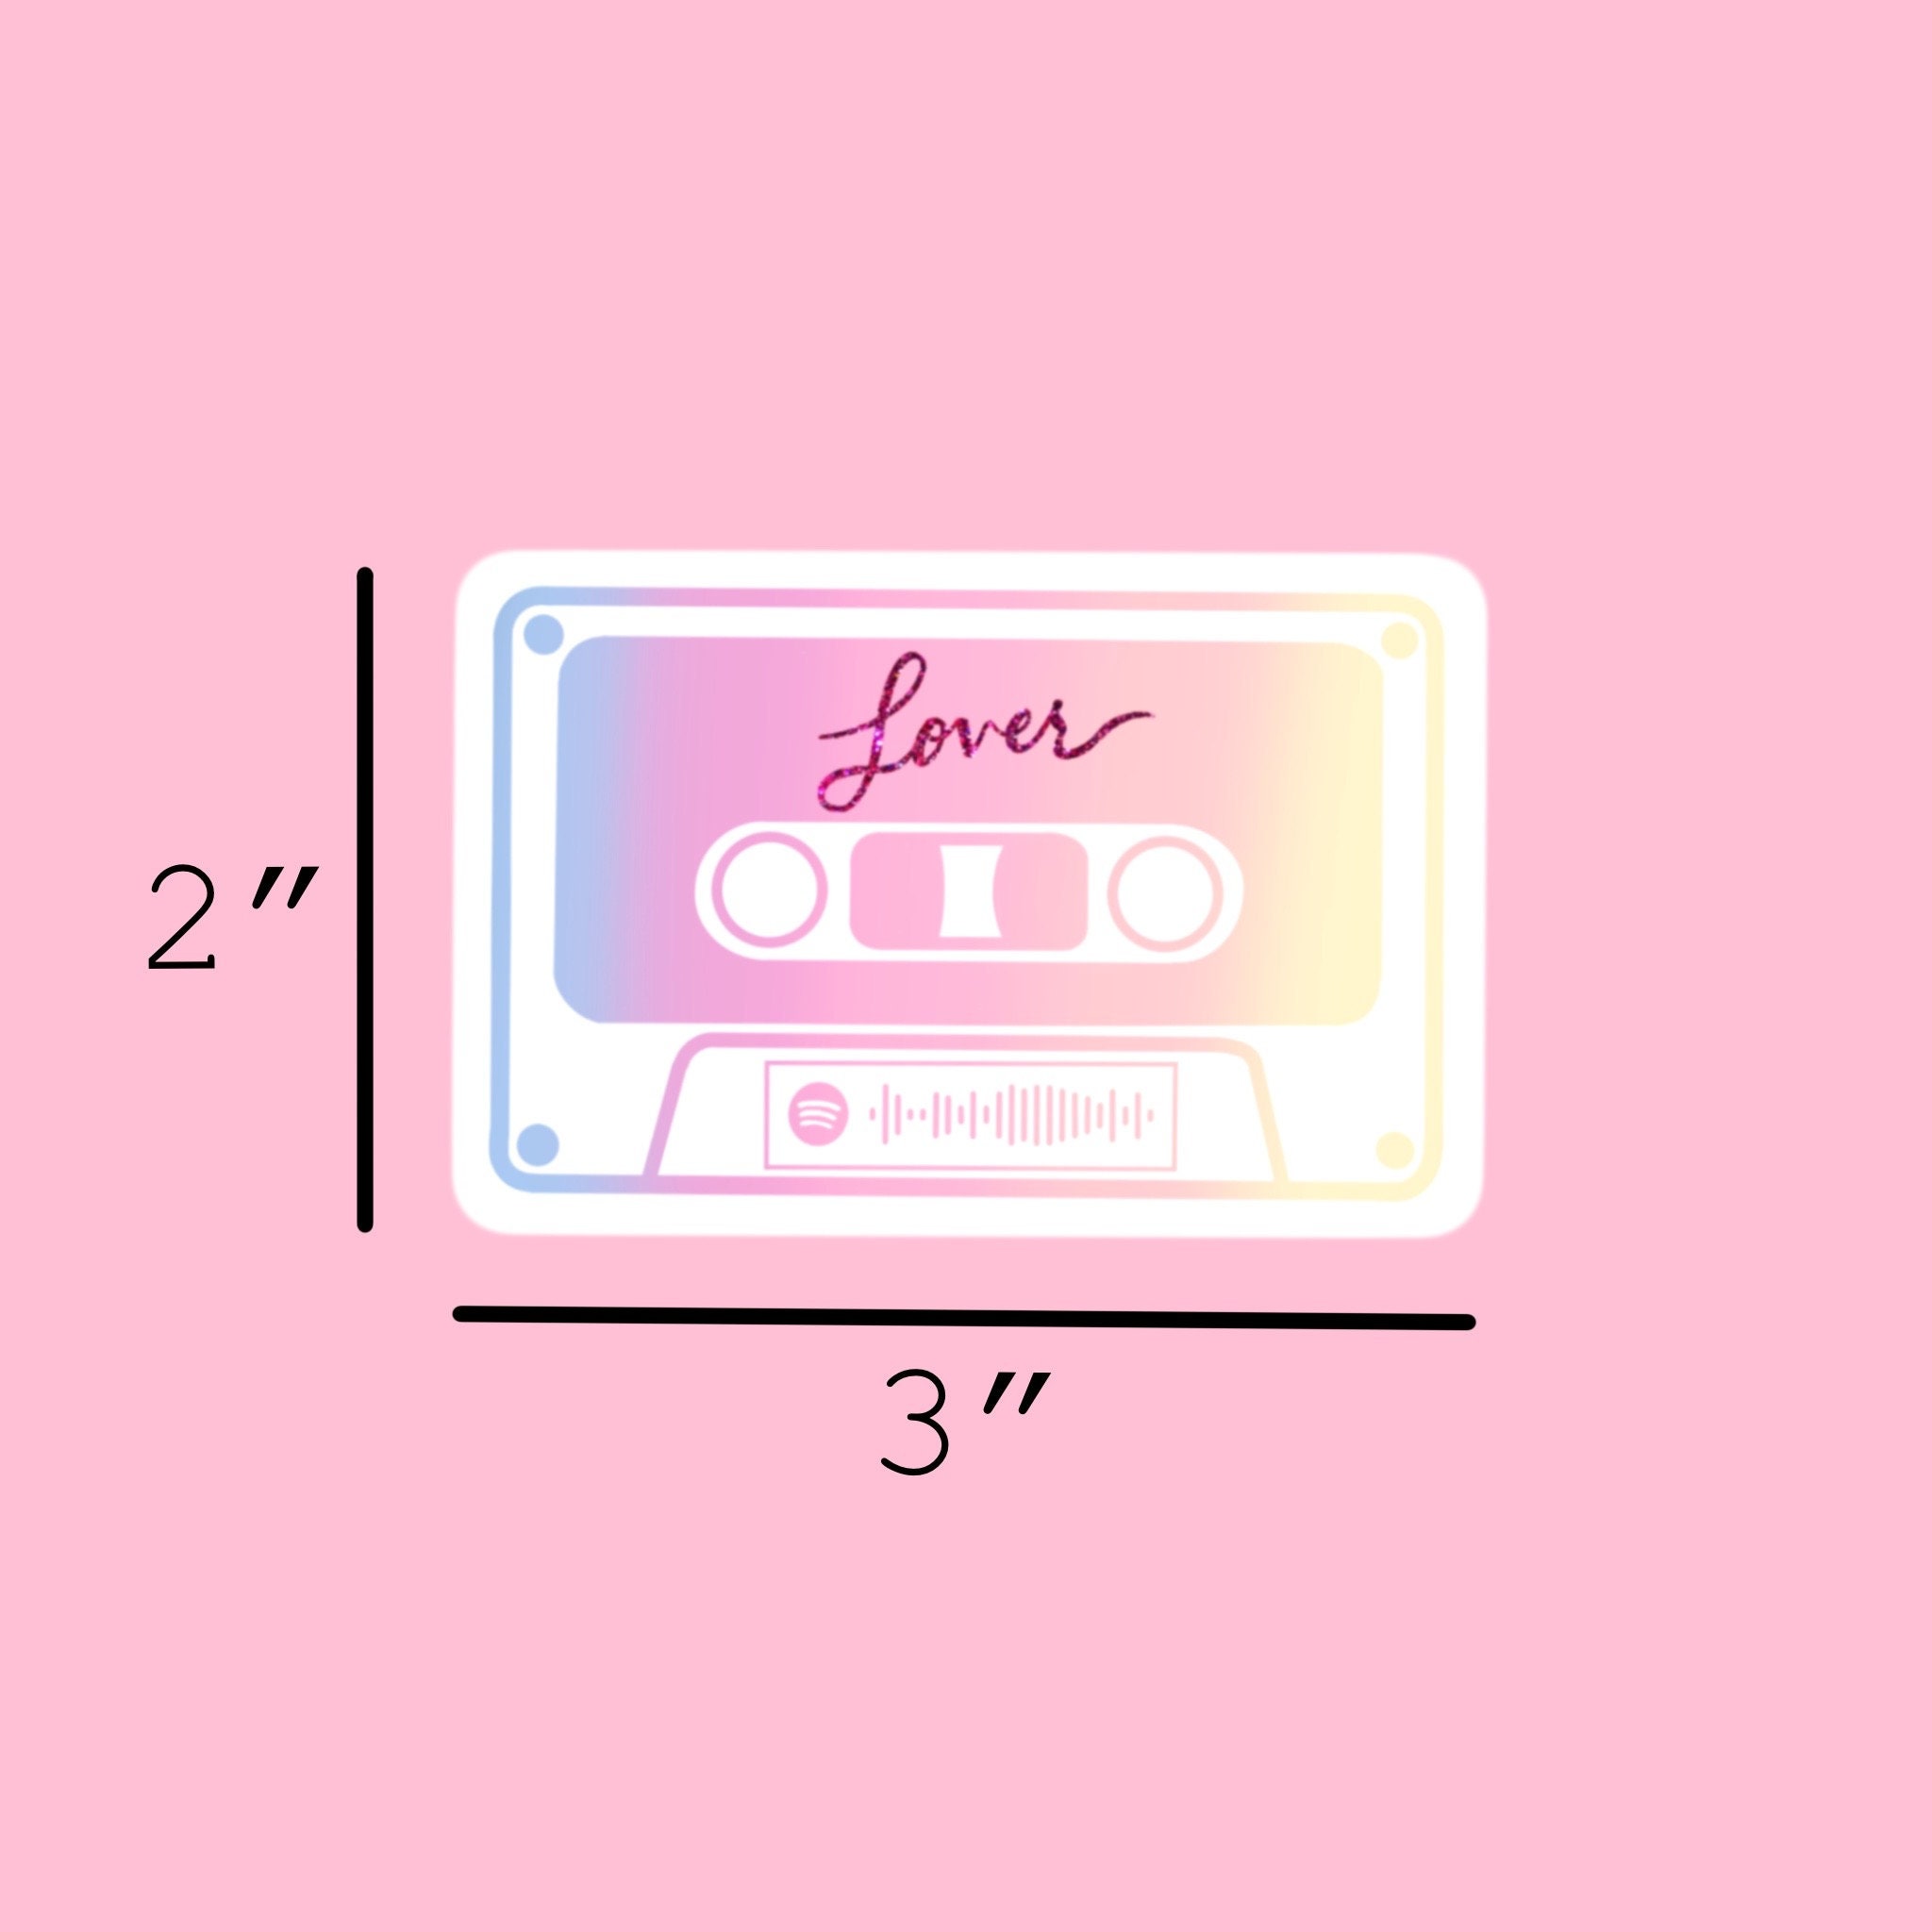 Taylor Swift Lover Spotify Code Cassette Tape Sticker 